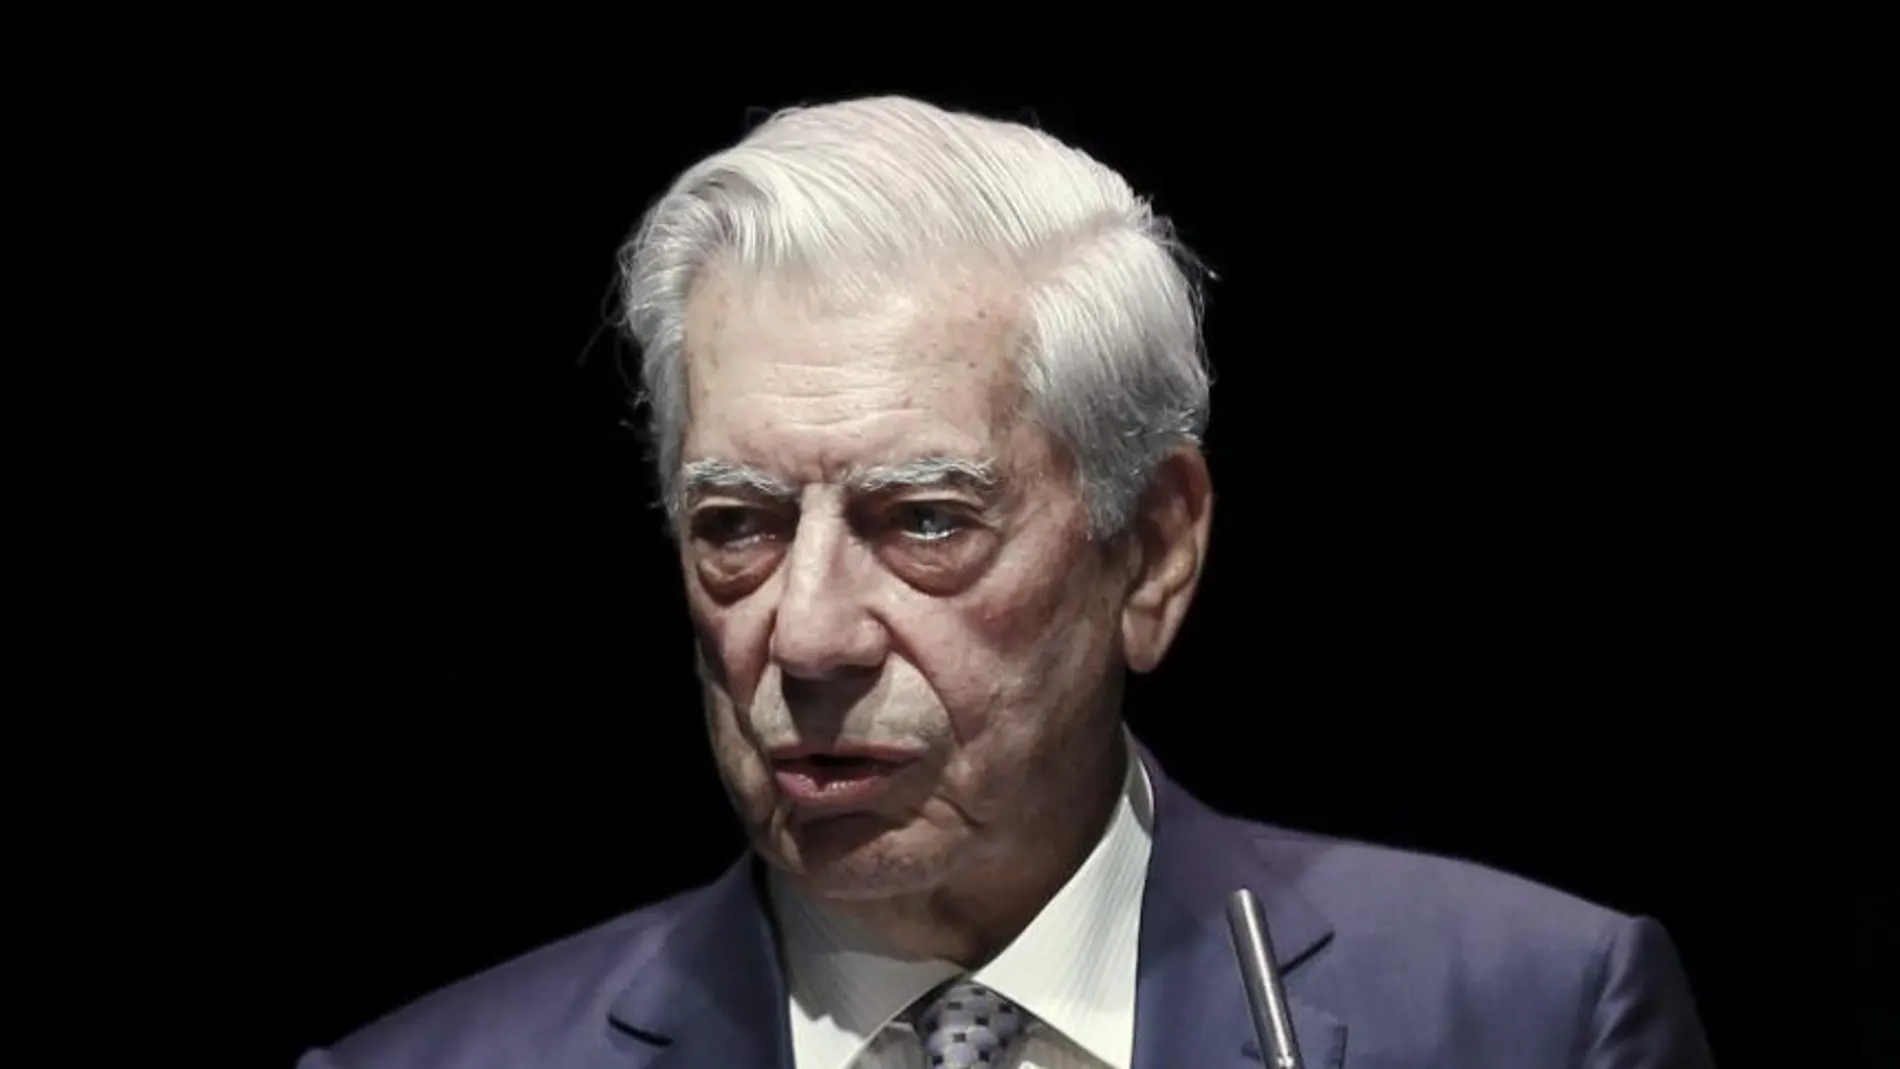 Mario Vargas Llosa durante su intervención en el debate sobre democracia y populismo en Latinoamérica en el llamado Foro Atlántico celebrado hoy en la Casa América.